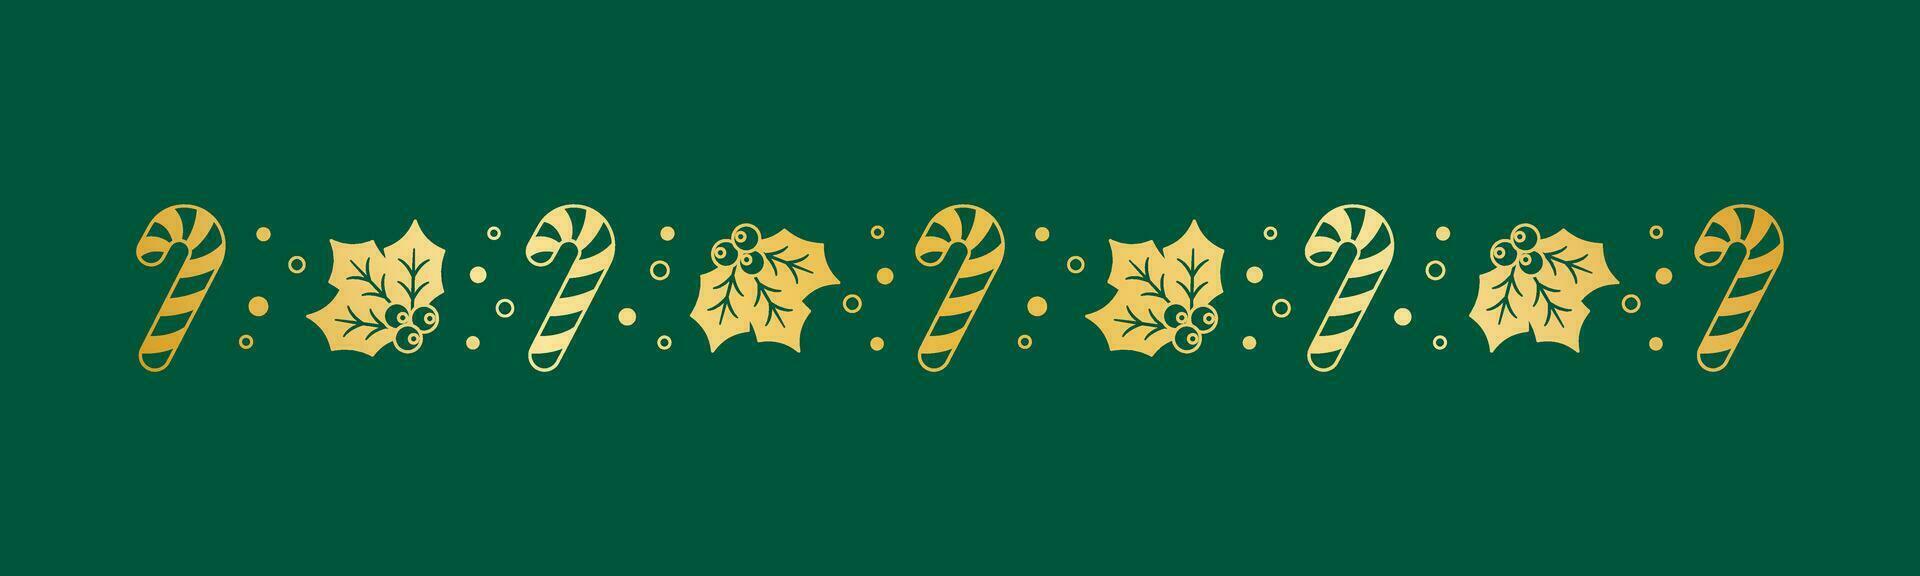 guld jul tema dekorativ gräns och text delare, mistel och godis sockerrör mönster silhuett. vektor illustration.